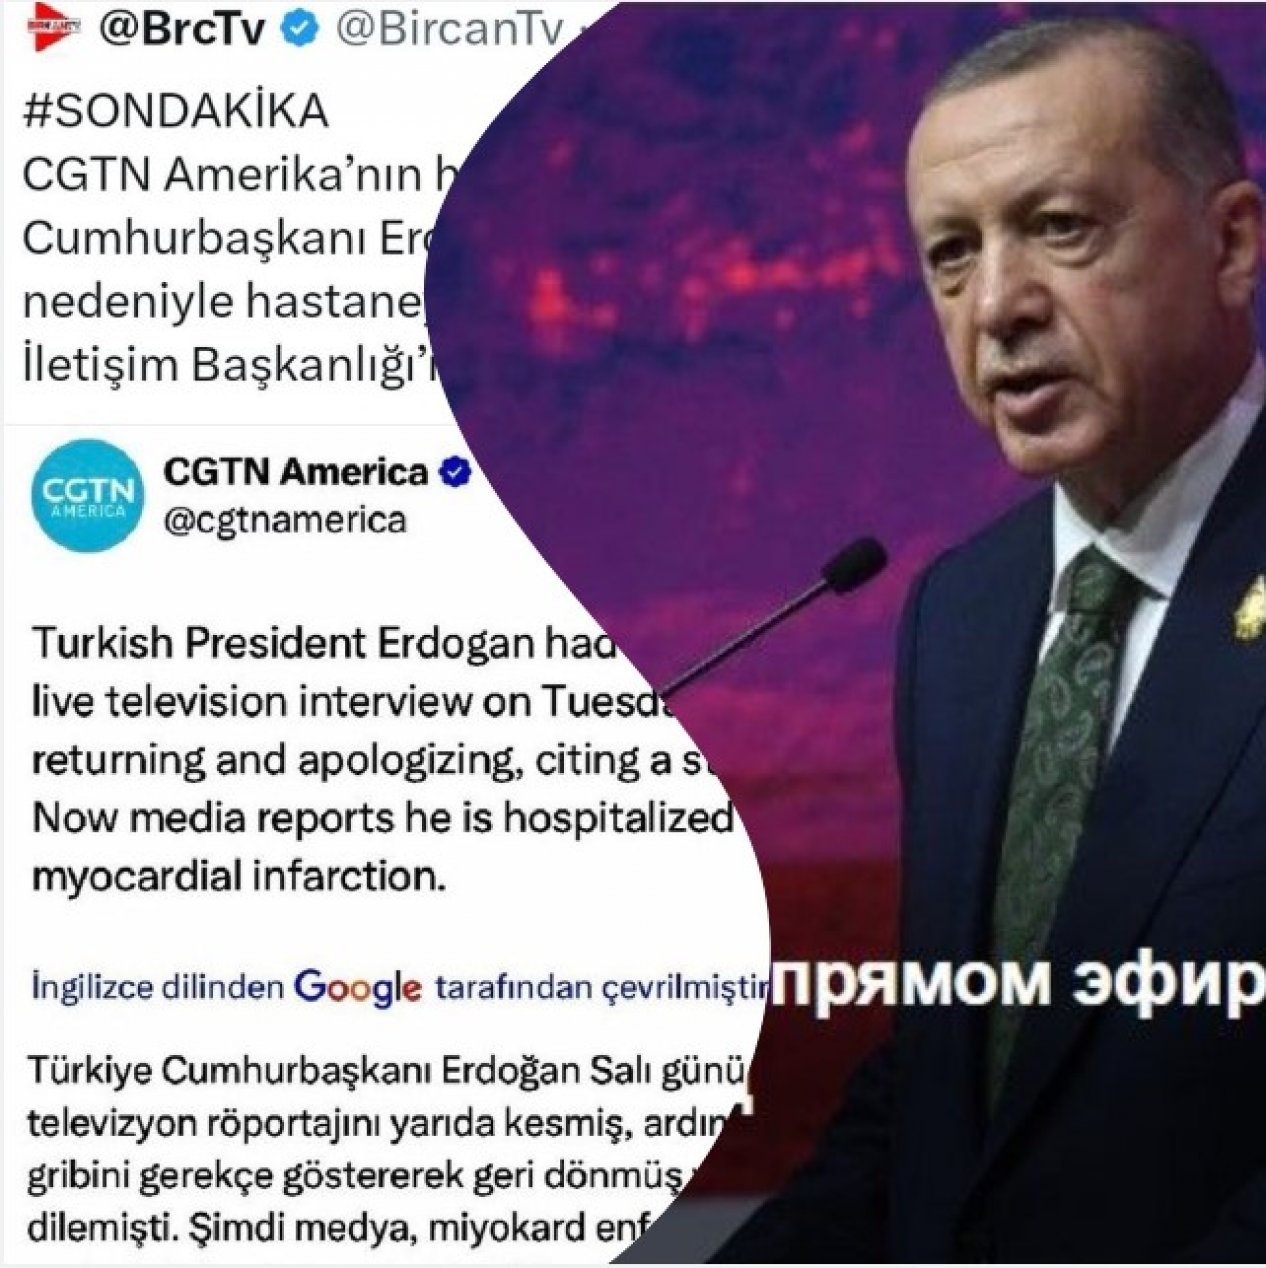 Türkiyə Prezidenti canlı yayımda infarkt keçirib? -Rəsmi açıqlama